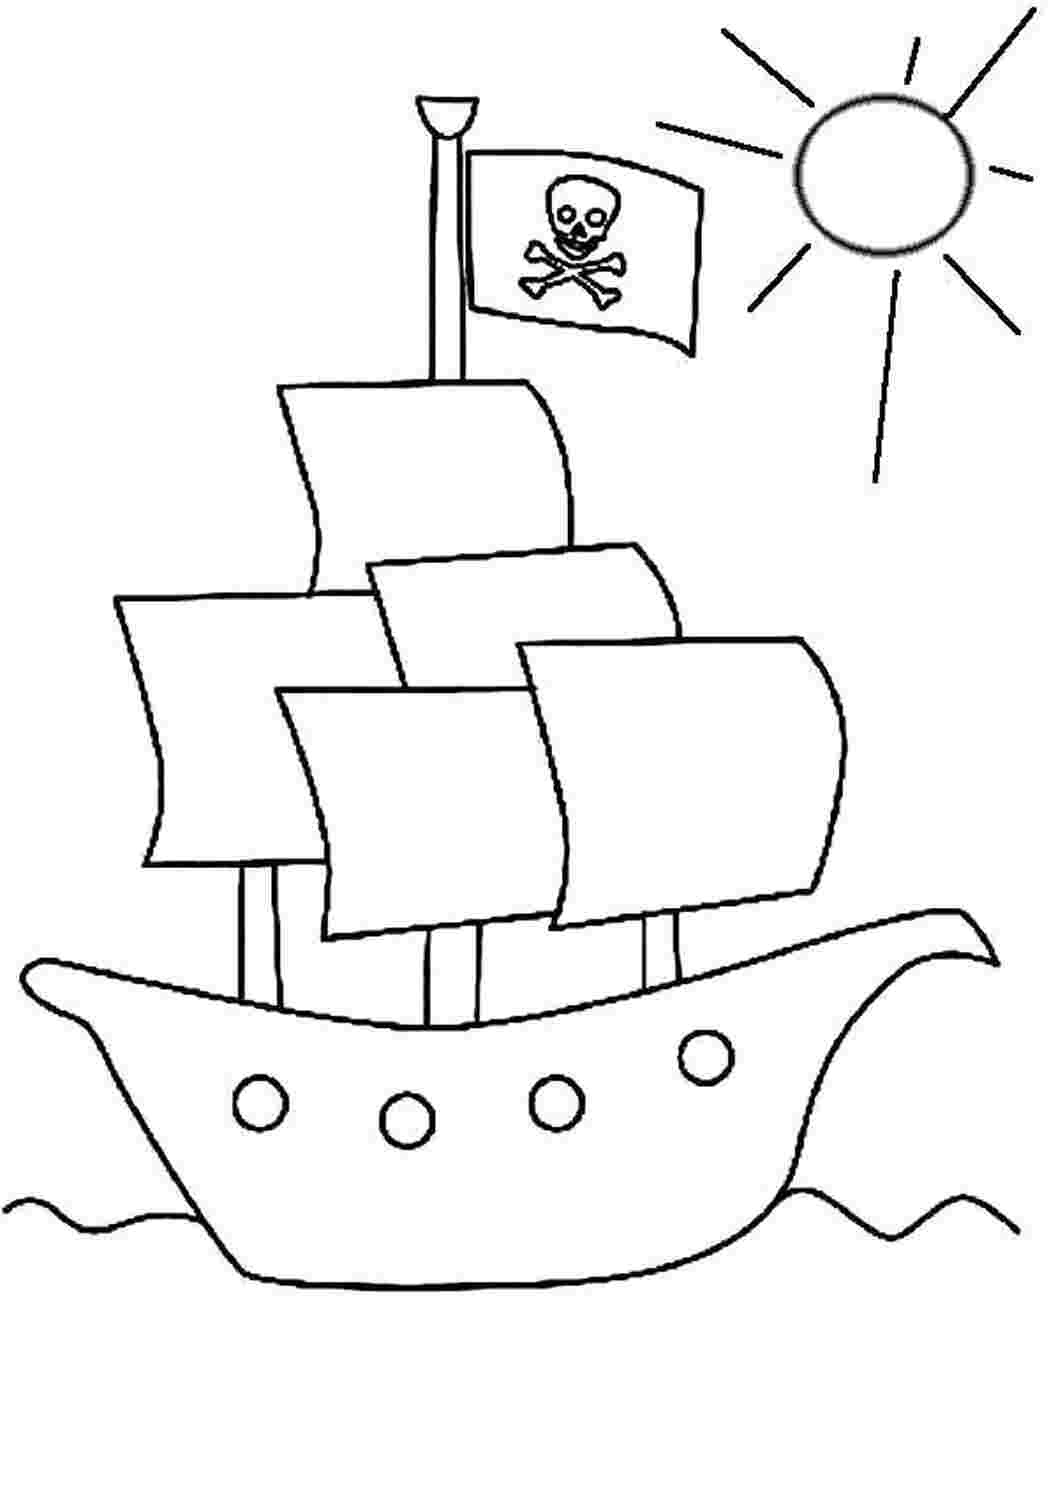 Трафарет корабля для рисования